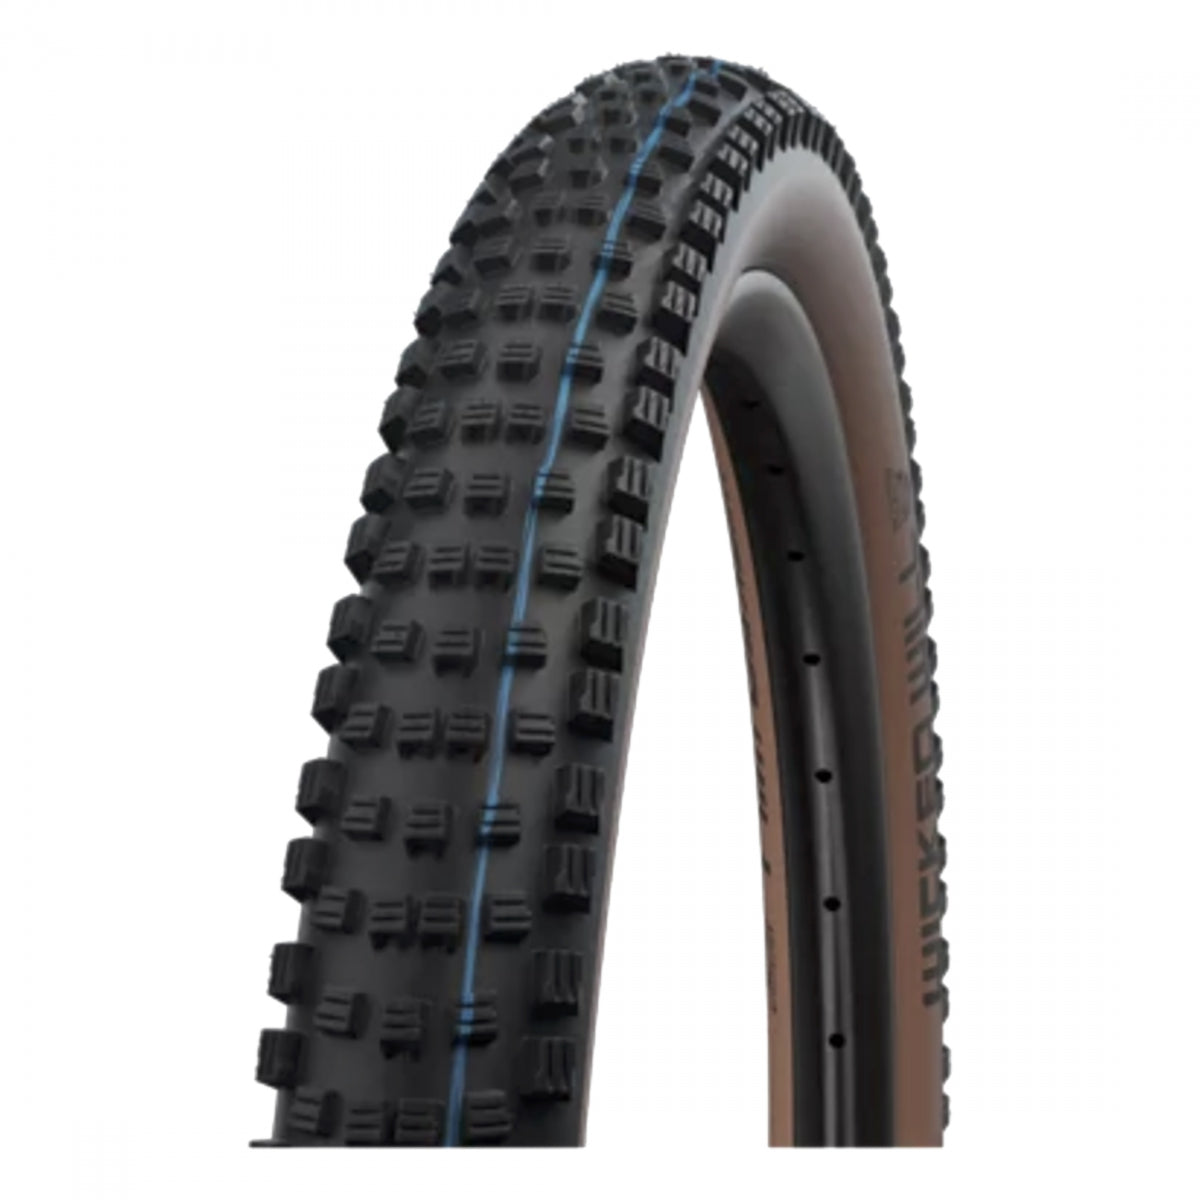 Tire Swb Wicked Will 29X2.4 Evo S-Race Black/Ysk Addix Sp-Grip Tle Fold